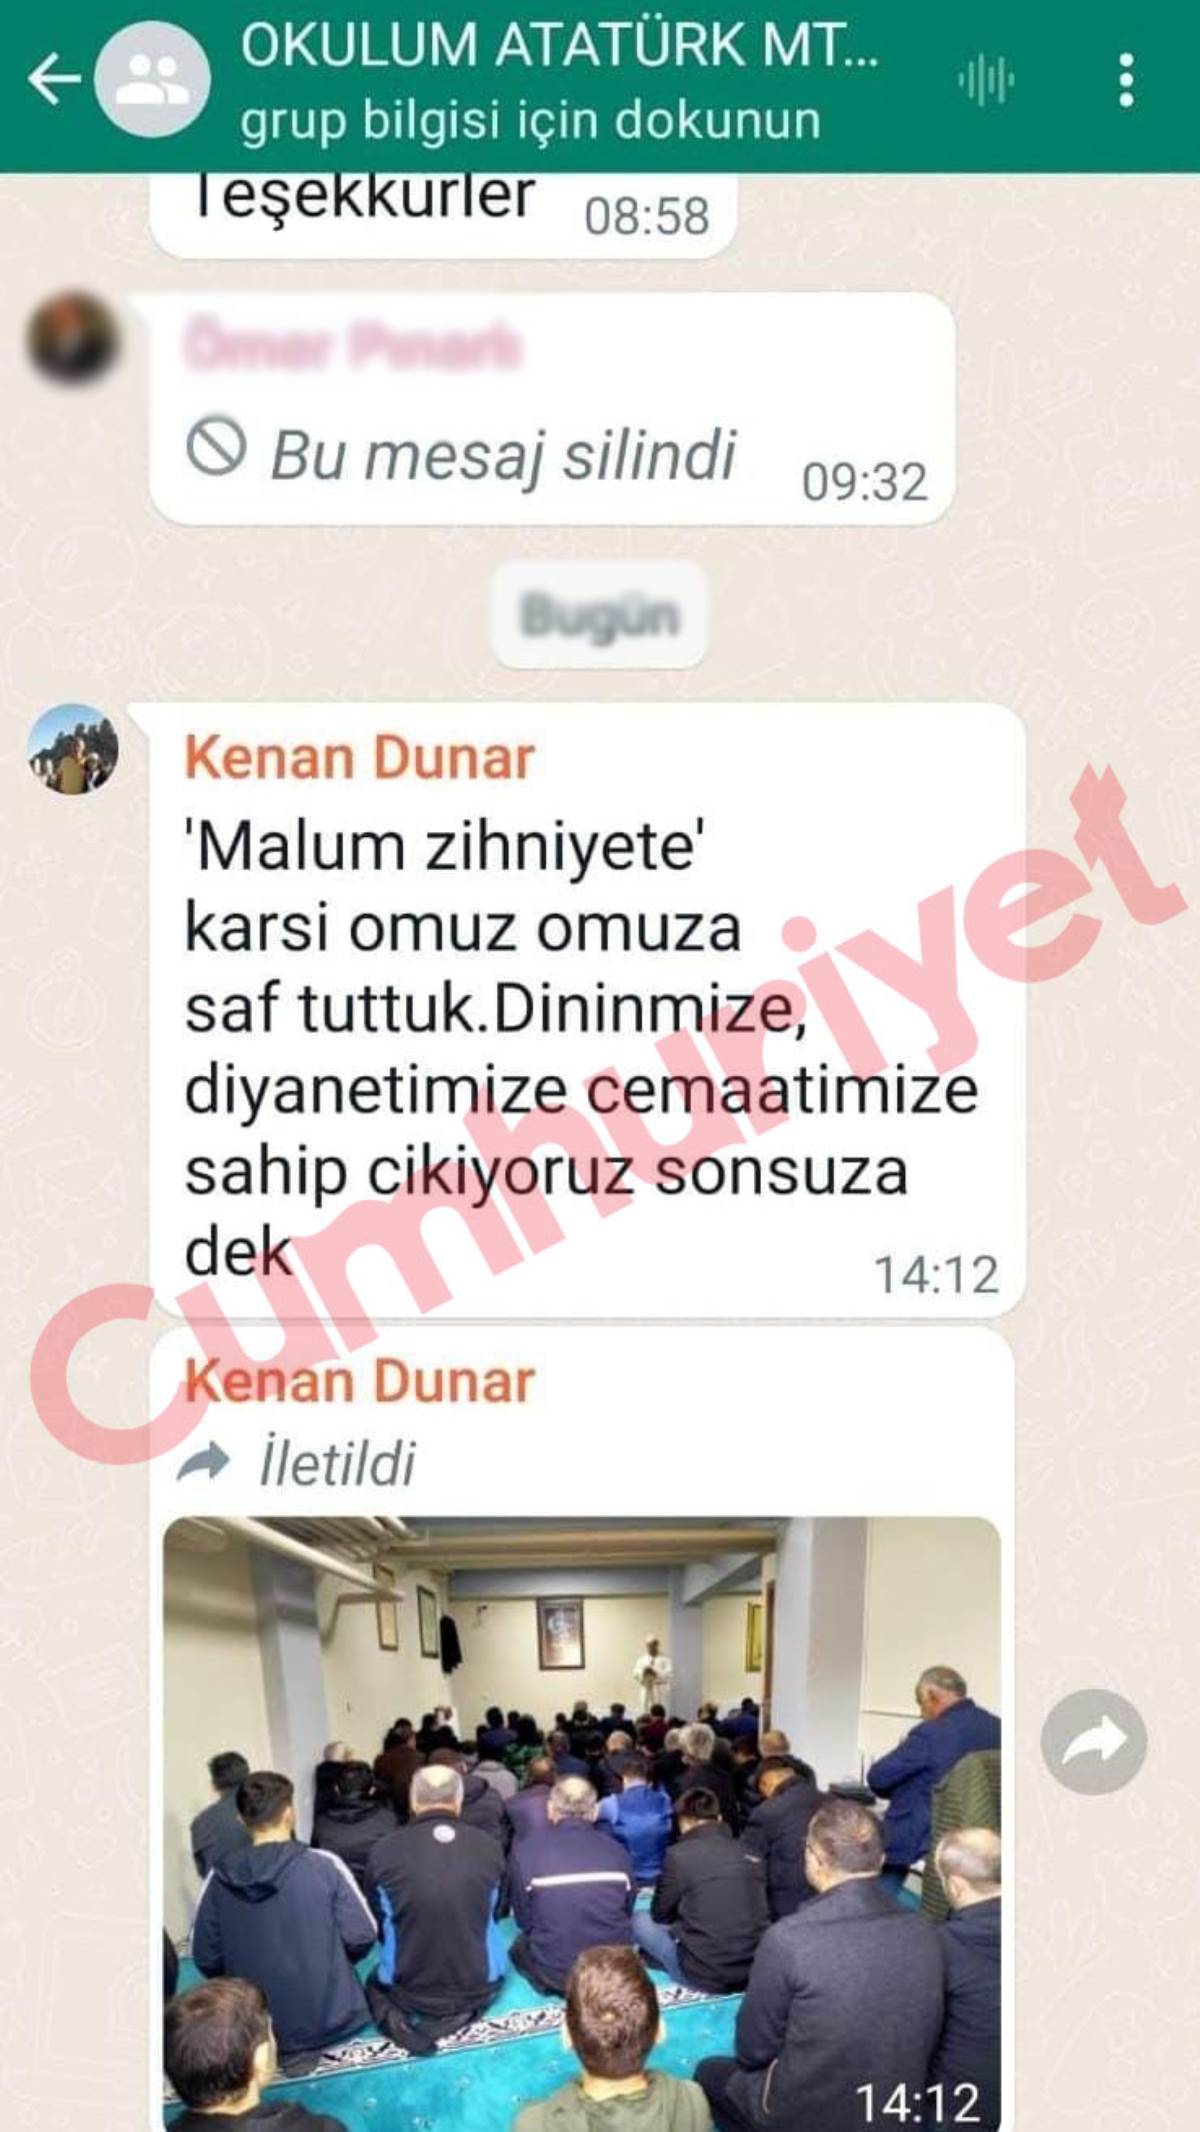 Bursa Atatürk Mesleki ve Teknik Anadolu Lisesi Müdür Yardımcısı: Laikliği savunanlarla savaşacakmış!